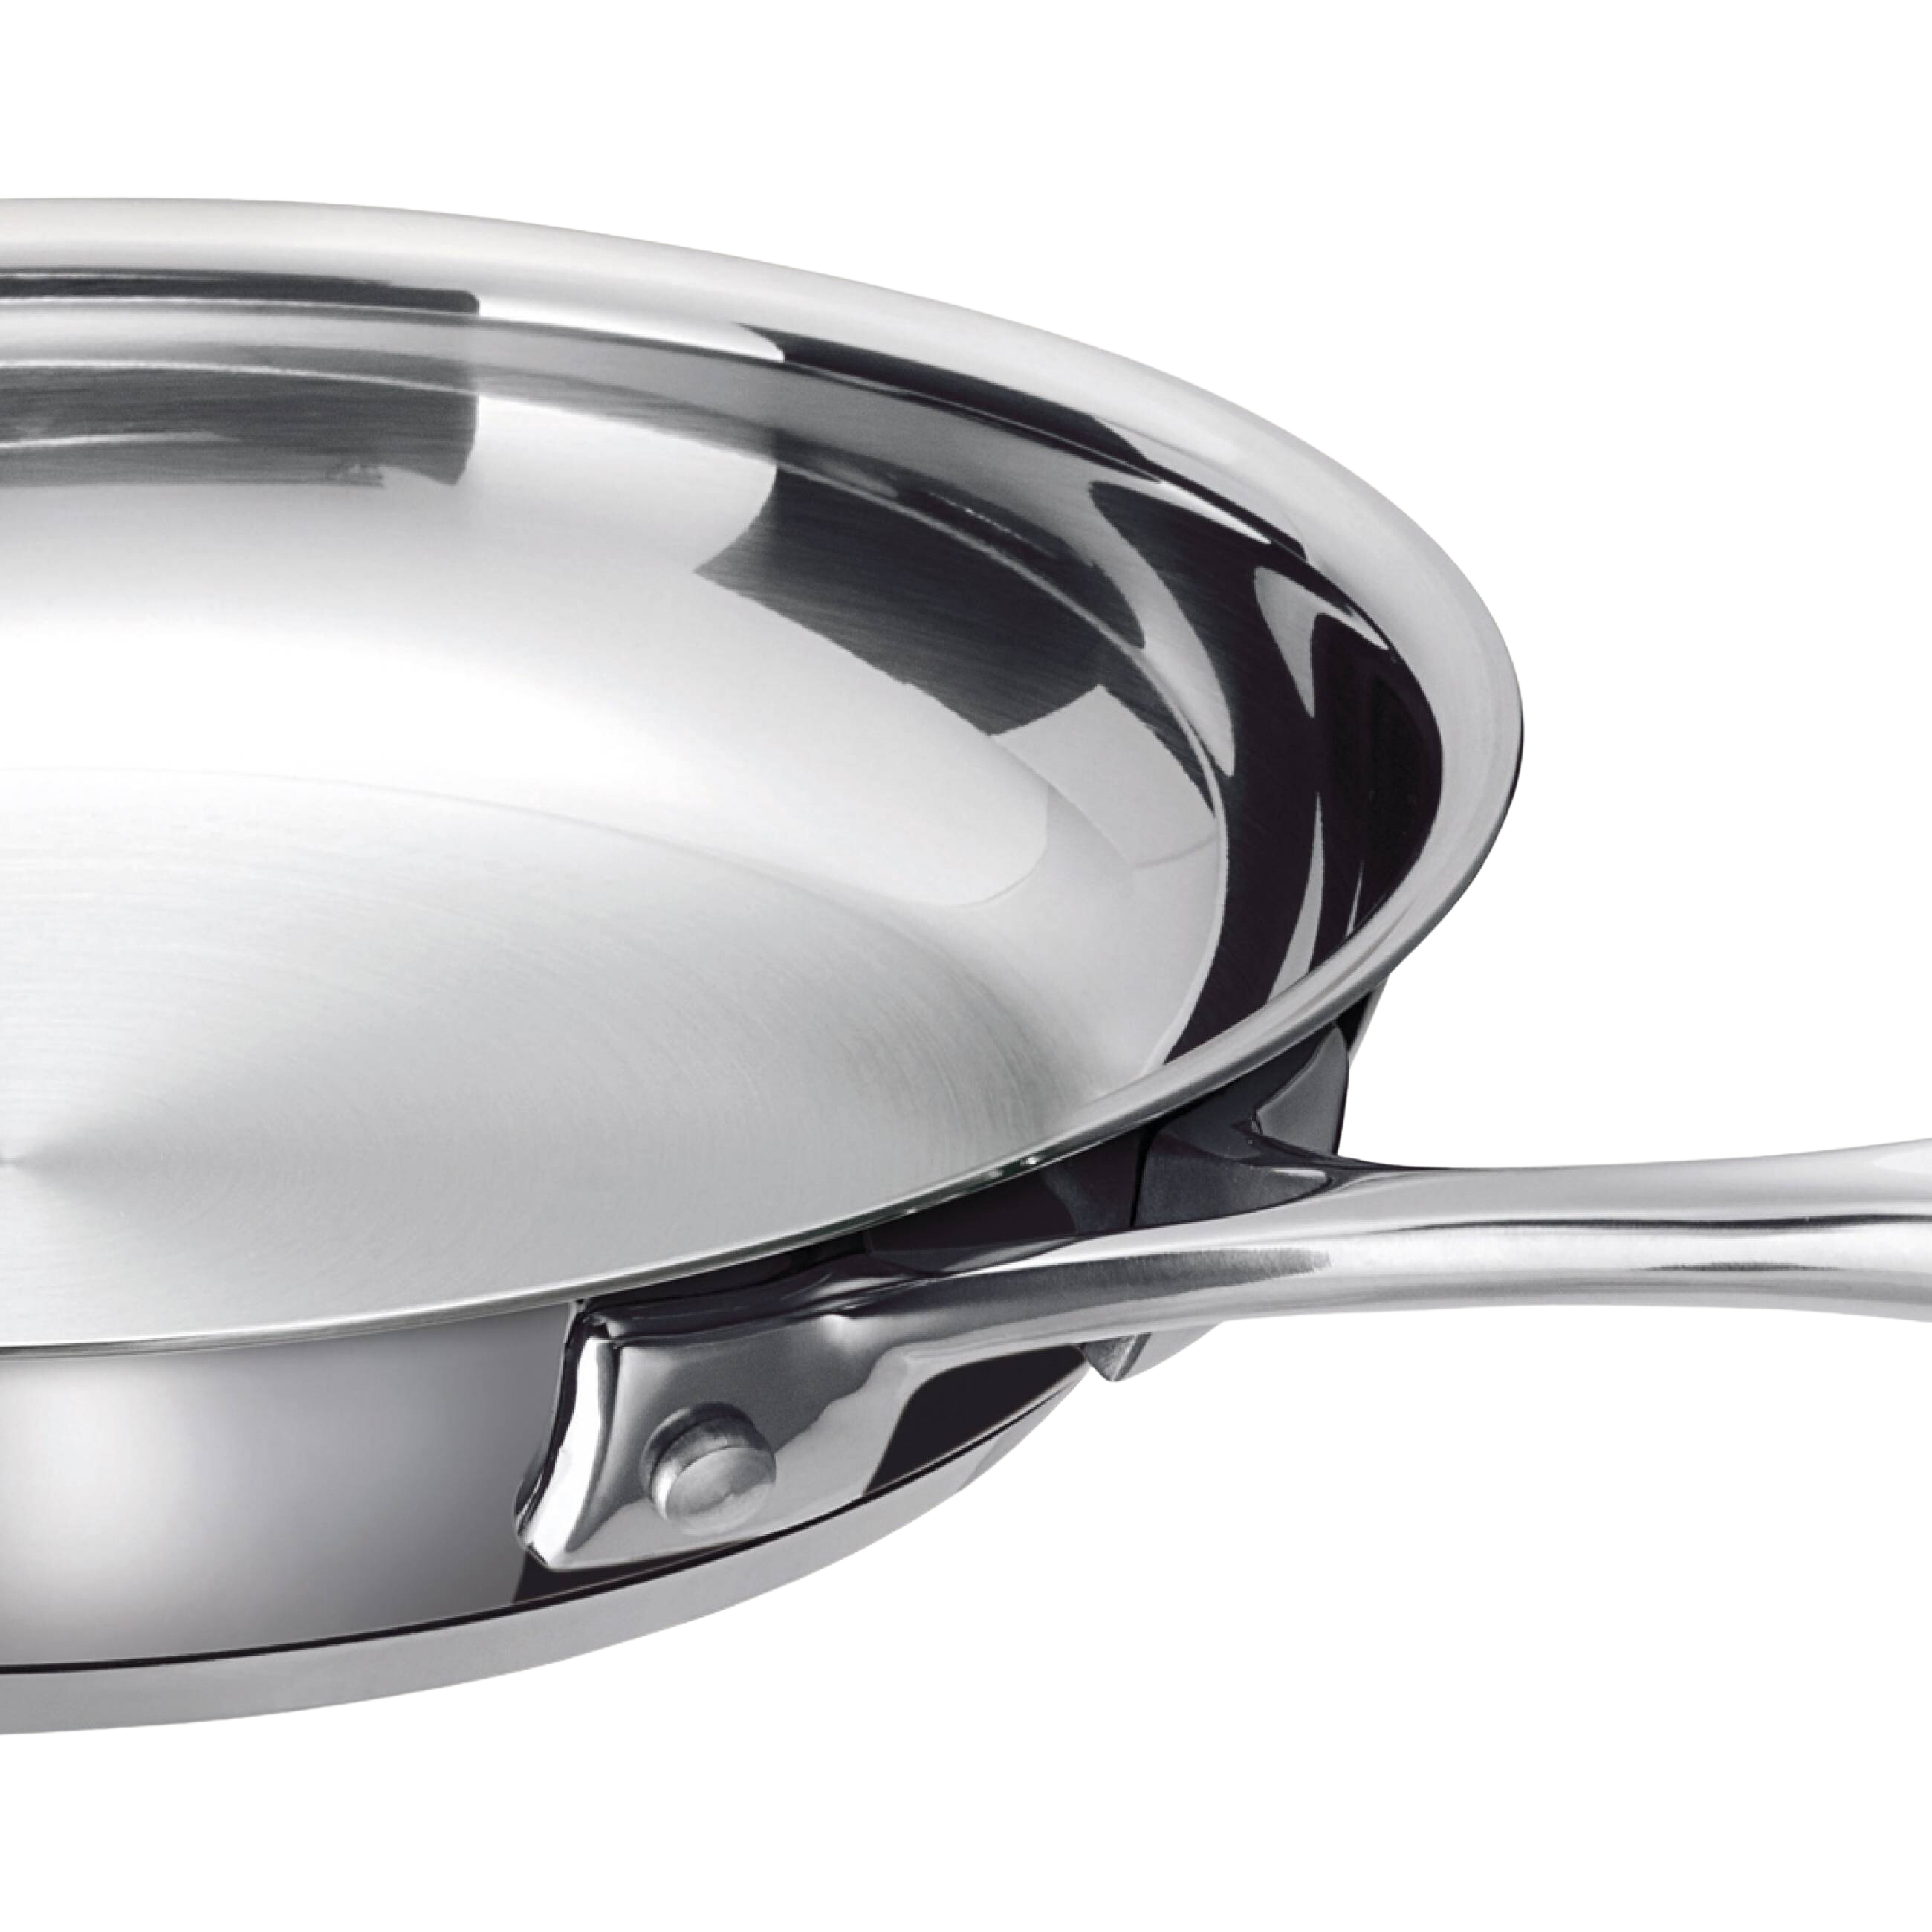 Alva Chef 8" Stainless Steel Frying Pan